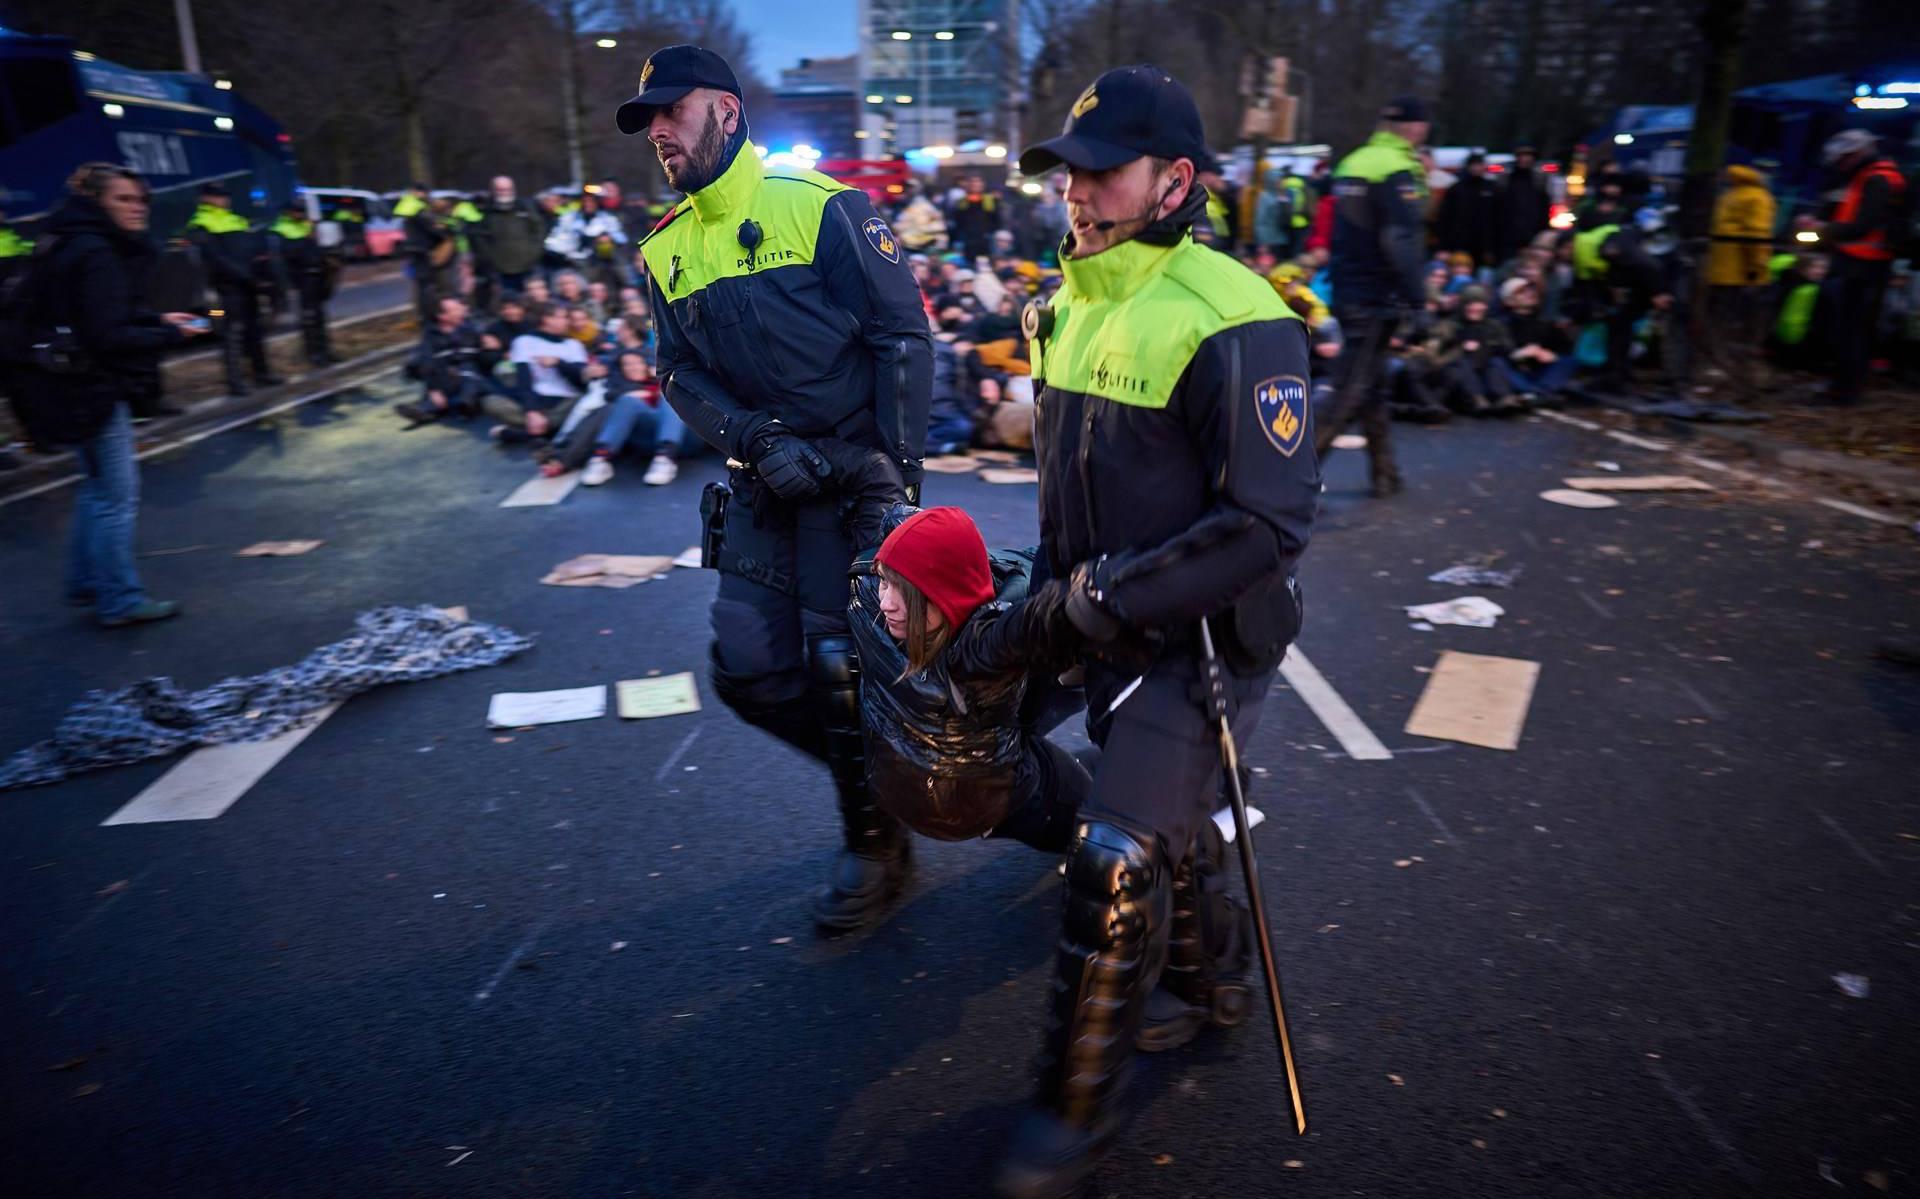 De politie arresteerde zo'n 700 mensen op de A12 in Den Haag.